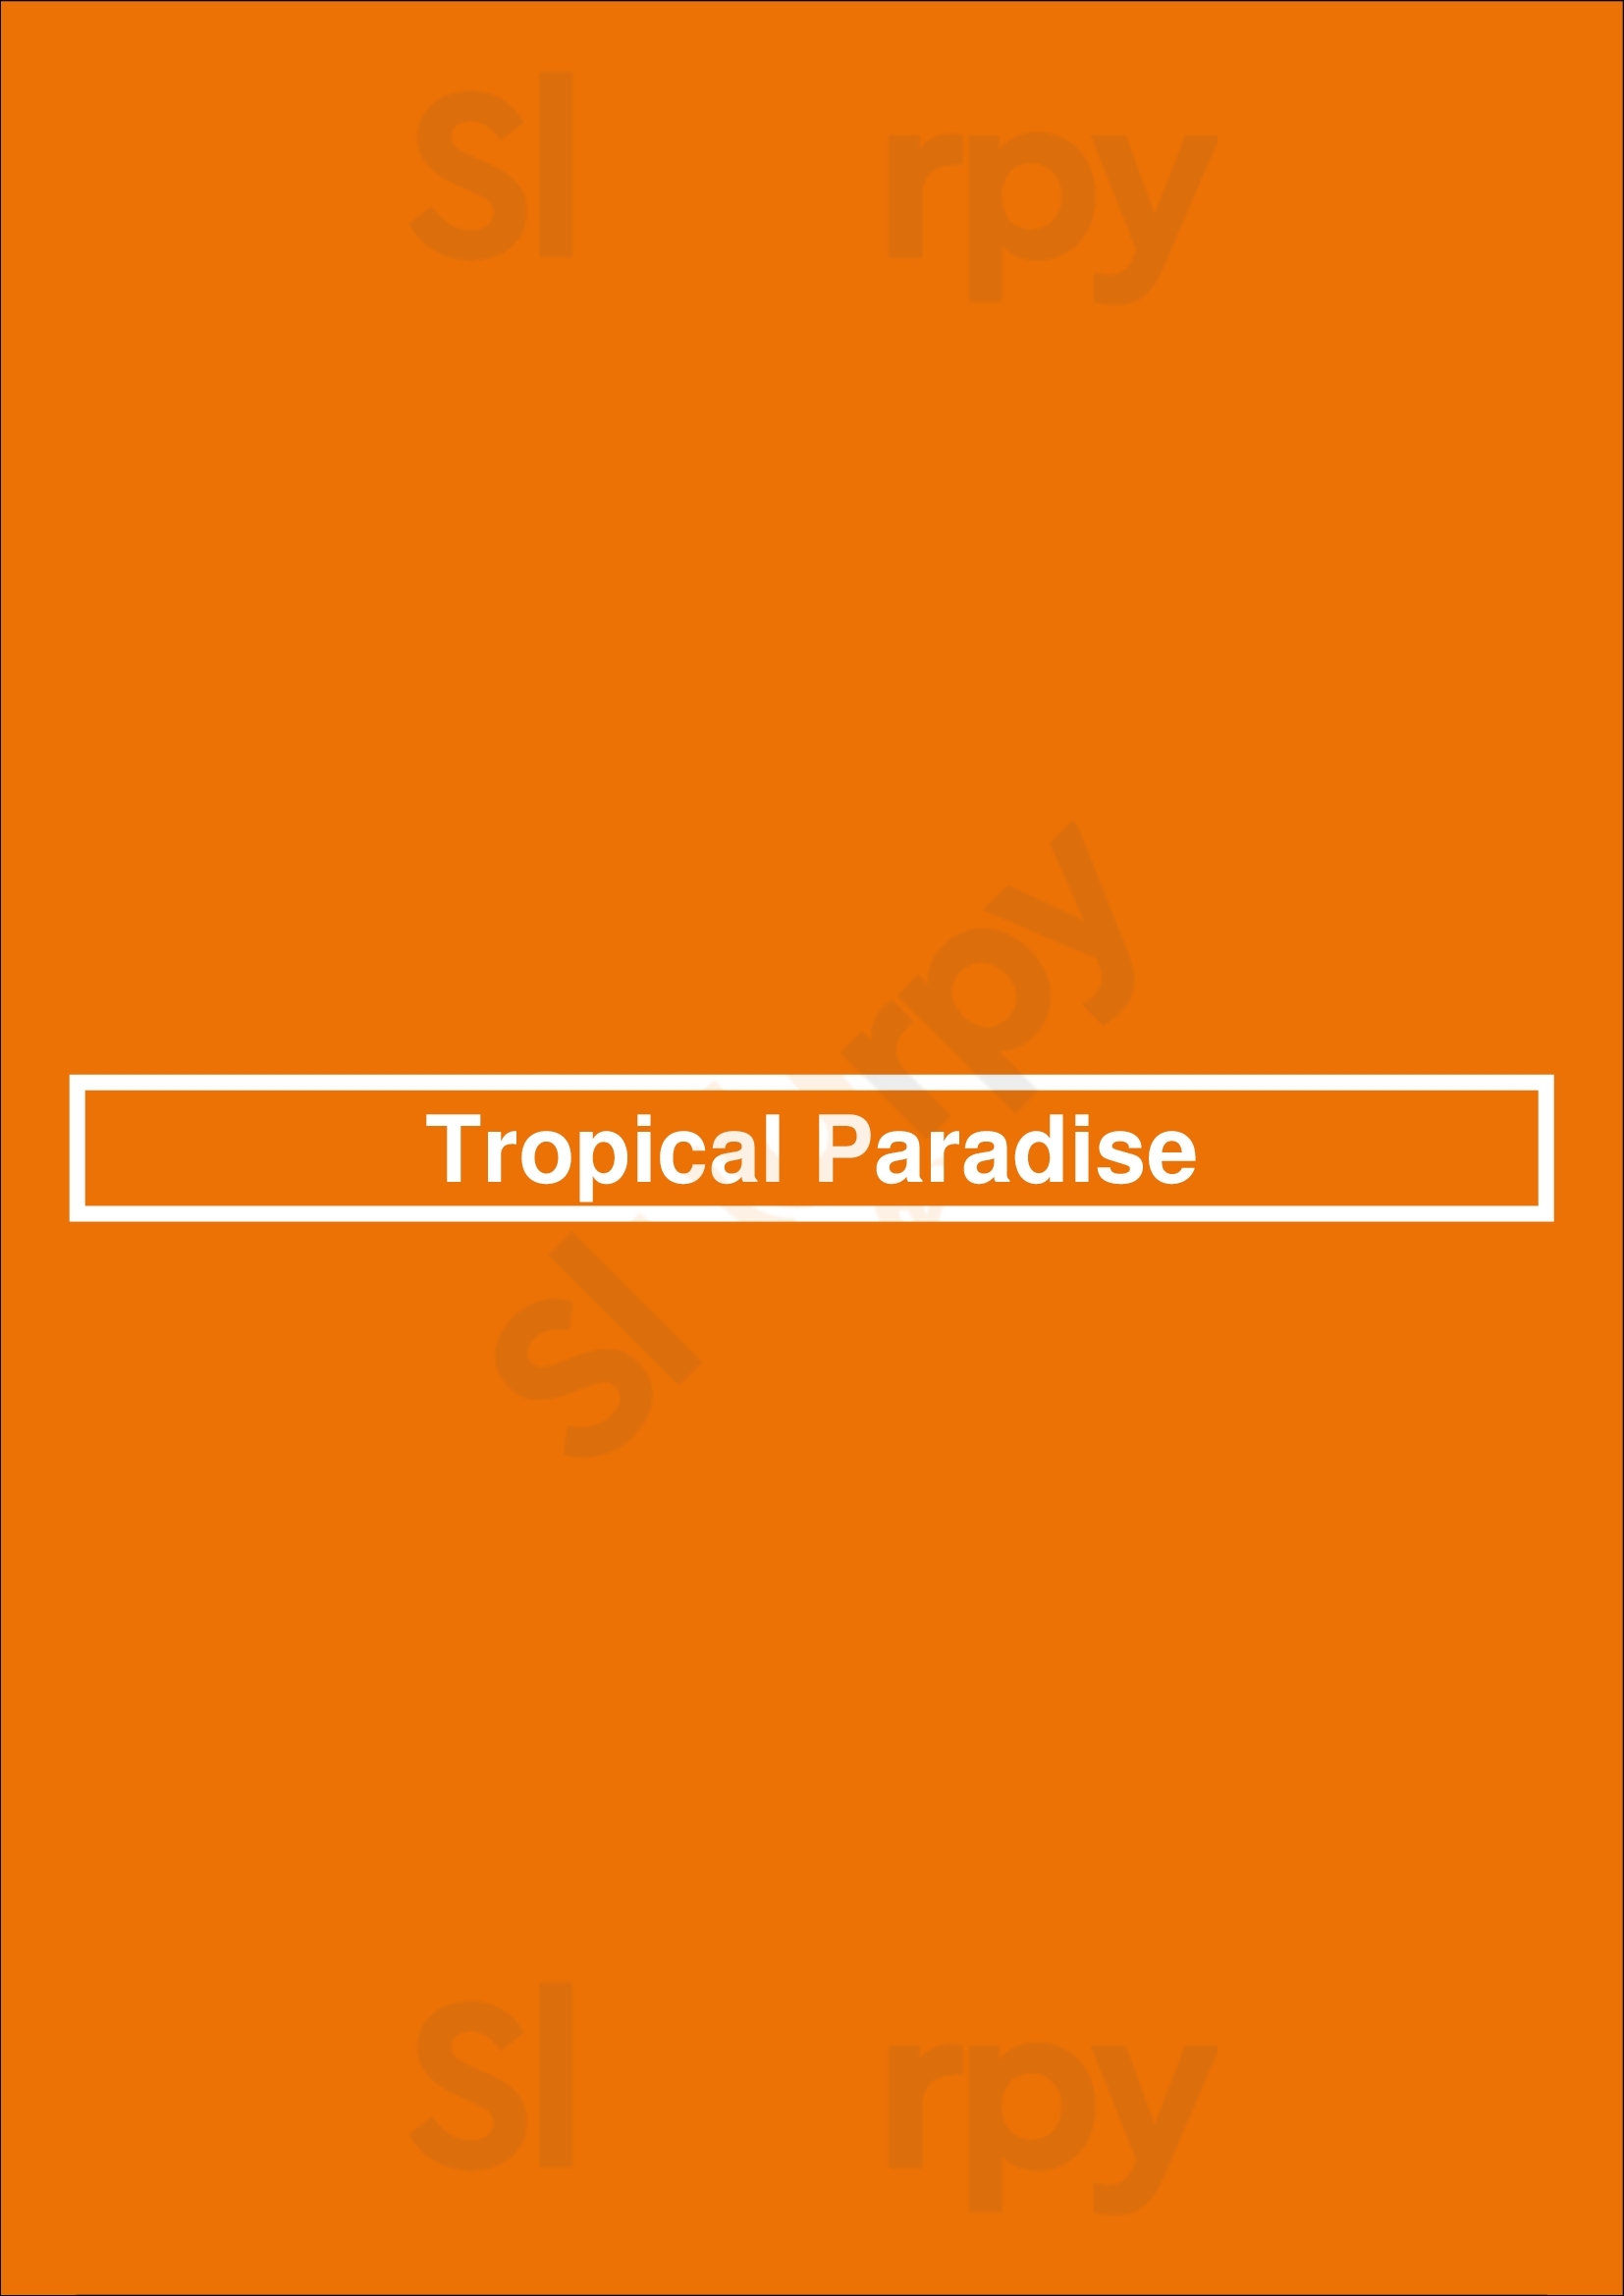 Tropical Paradise Montreal Menu - 1